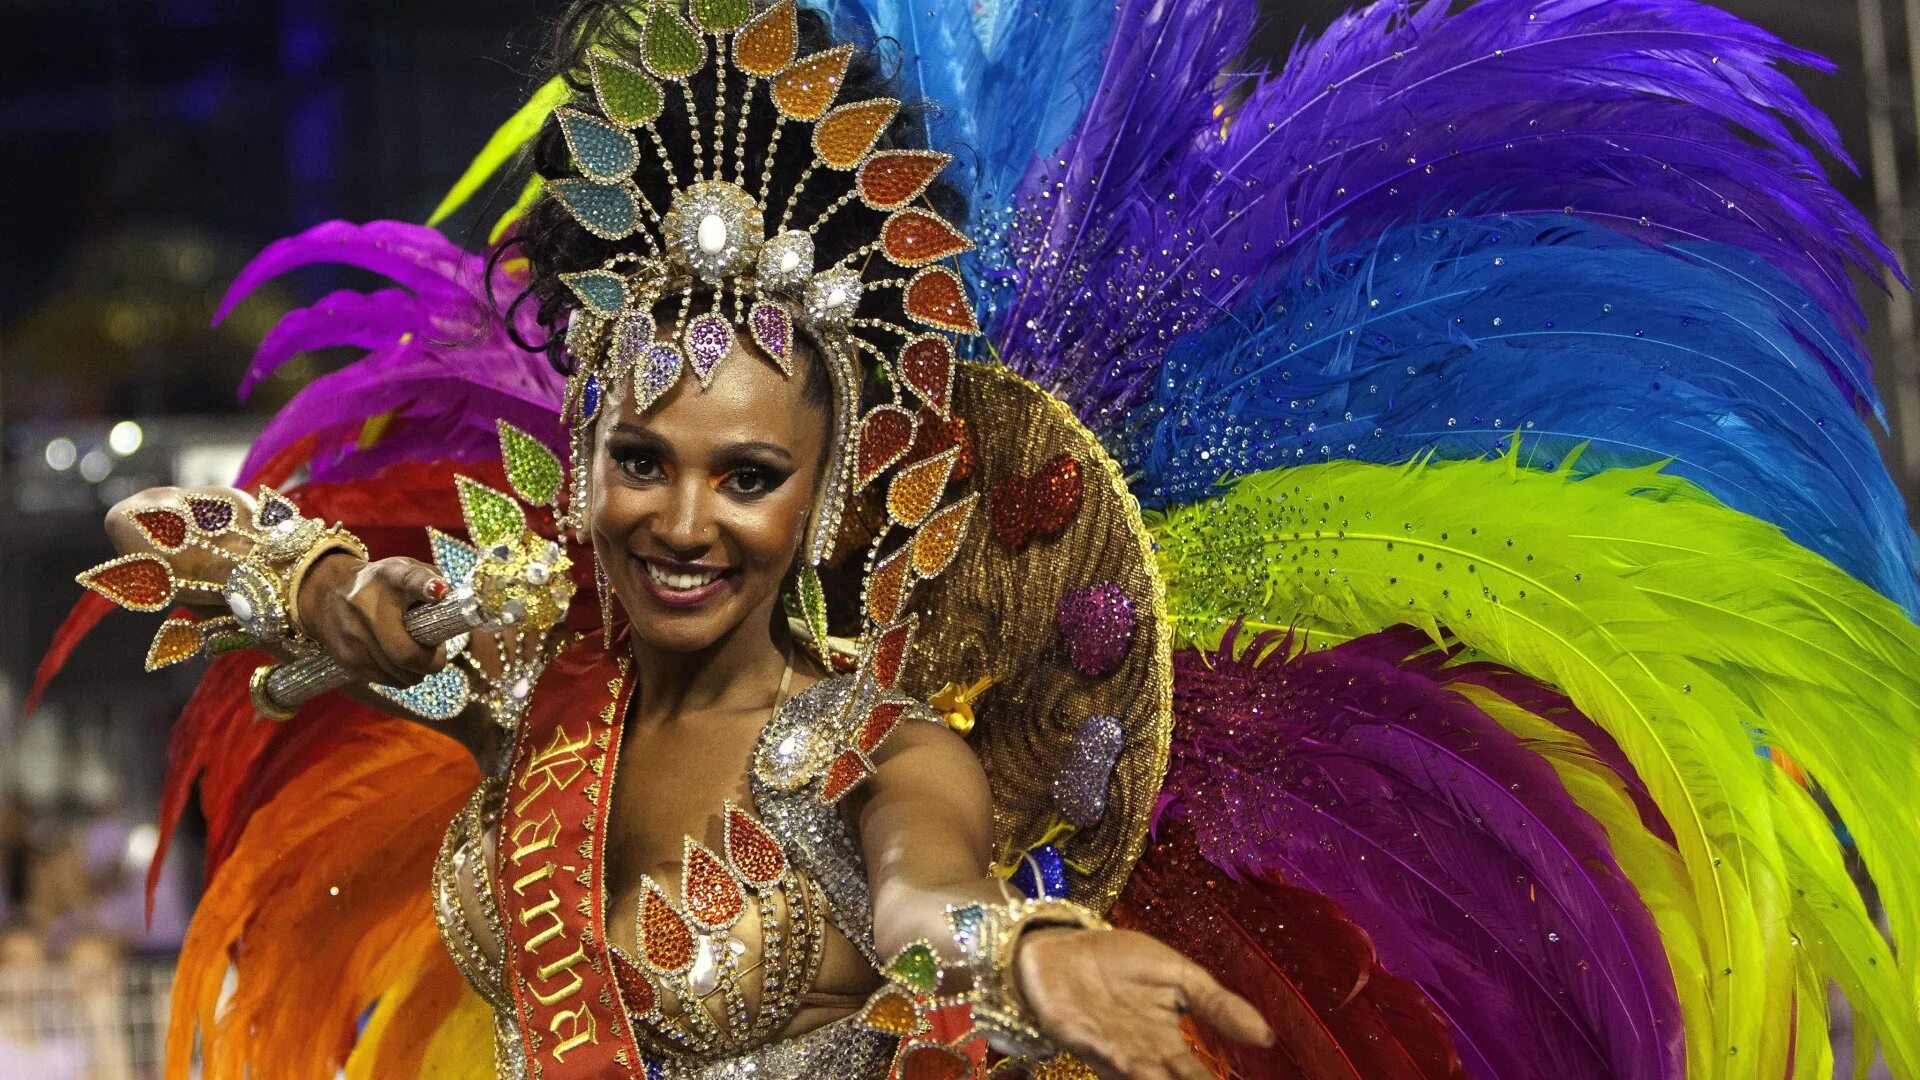 Карнавал в Рио-де-Жанейро. Карнавал в Рио-де-Жанейро 2022. Рио-де-Жанейро карнавал костюмы. Карнавал в Рио-де-Жанейро (бразильский карнавал). Life in rio super